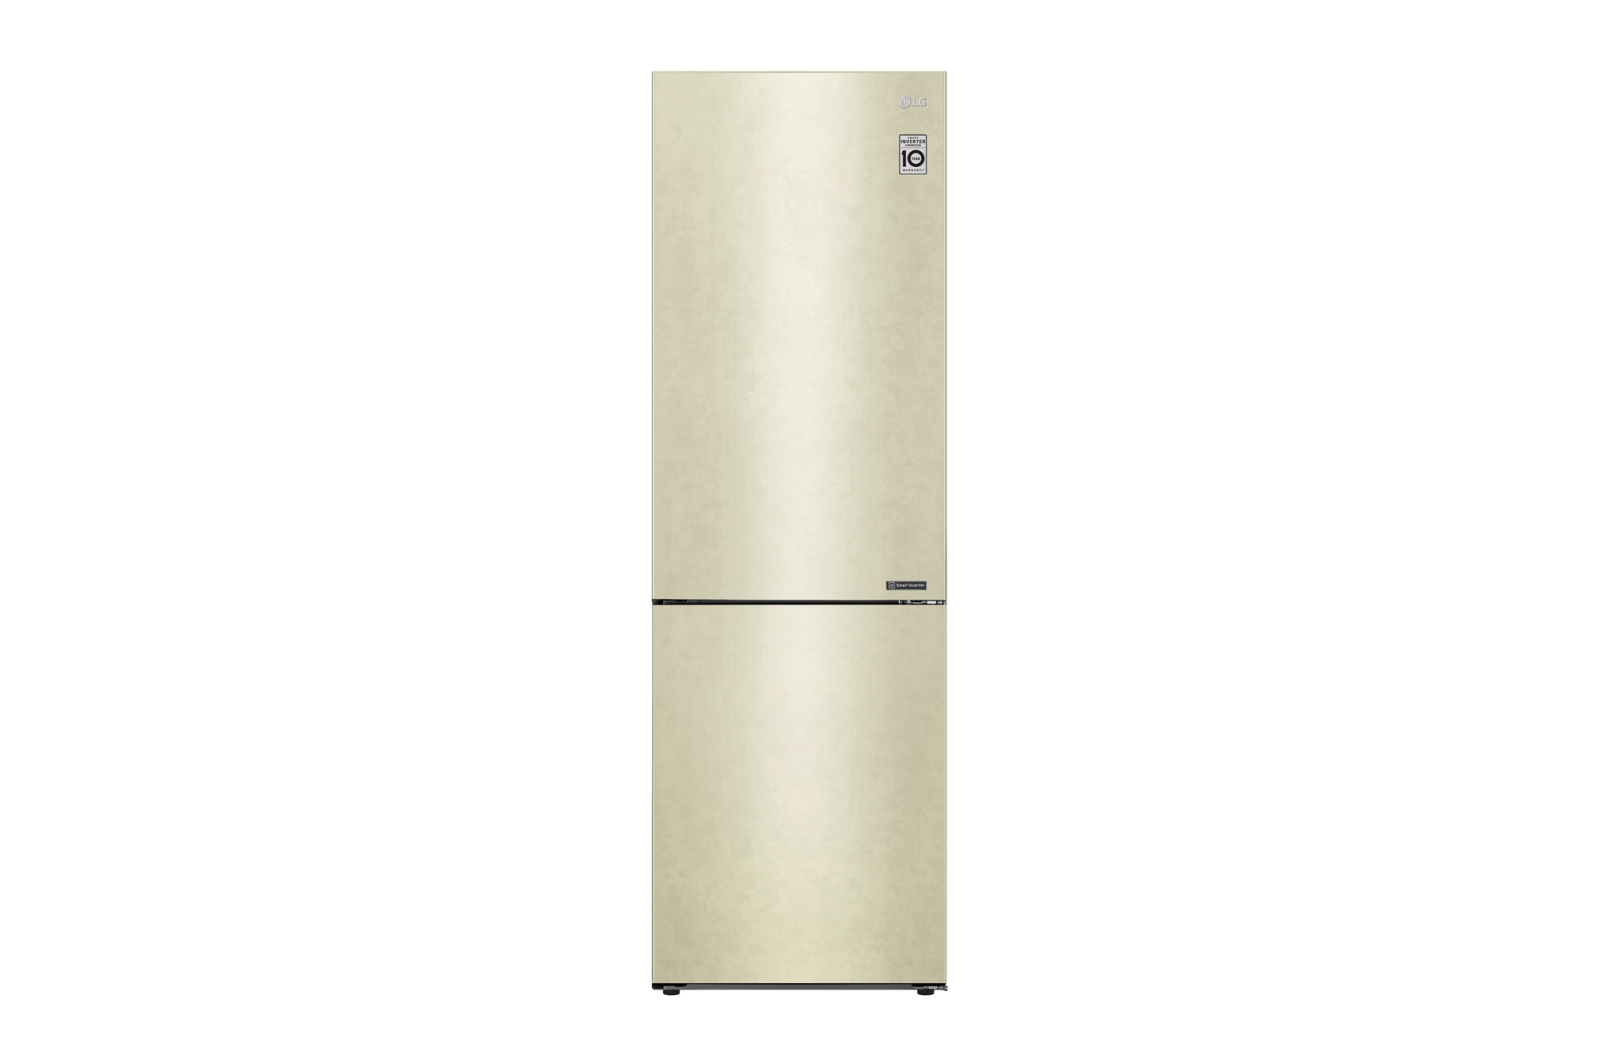 Двухкамерный холодильник LG GA-B459CECL																		 — описание, фото, цены в интернет-магазине Премьер Техно